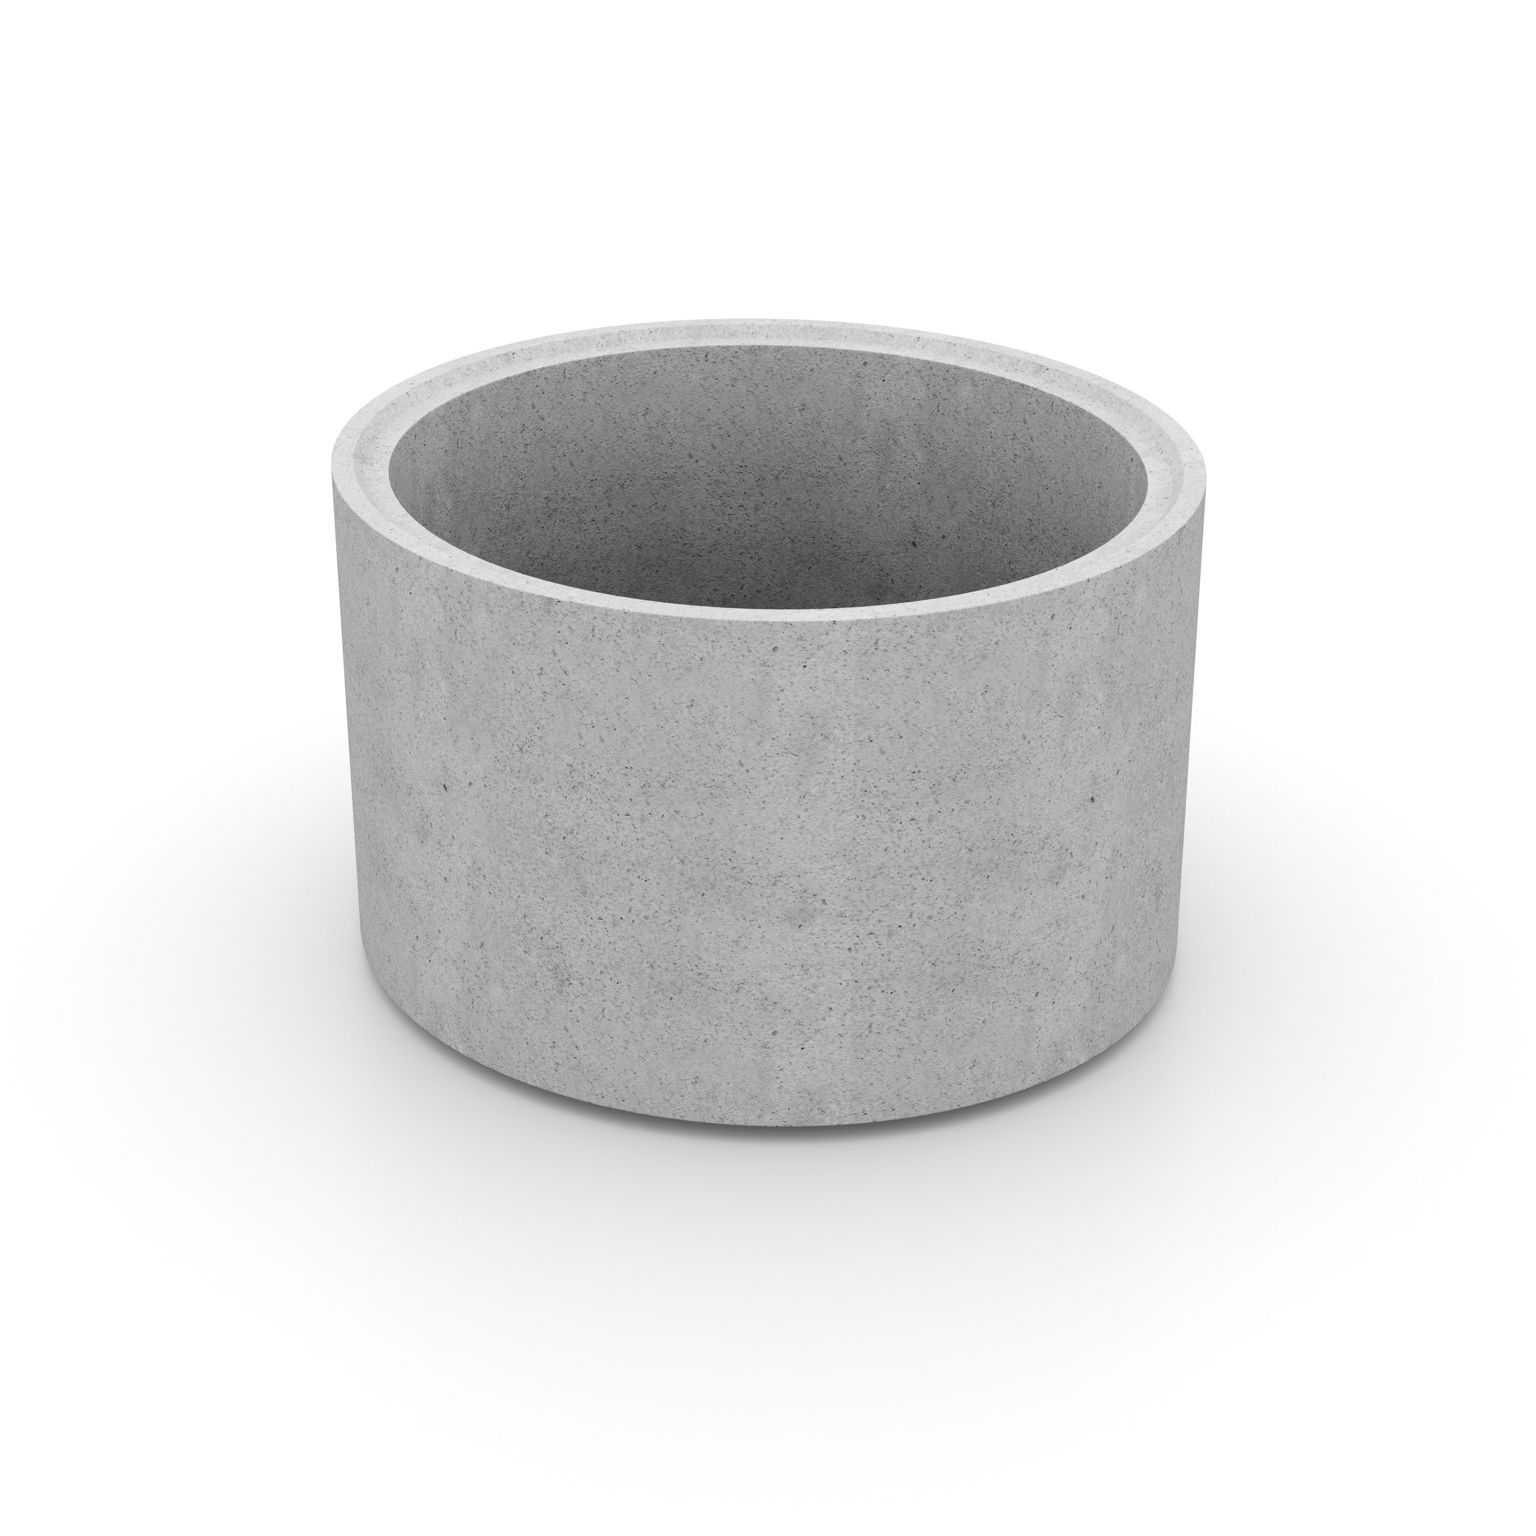 Produktbild av en cementfogad brunnsring i formatet: 1200x800 mm